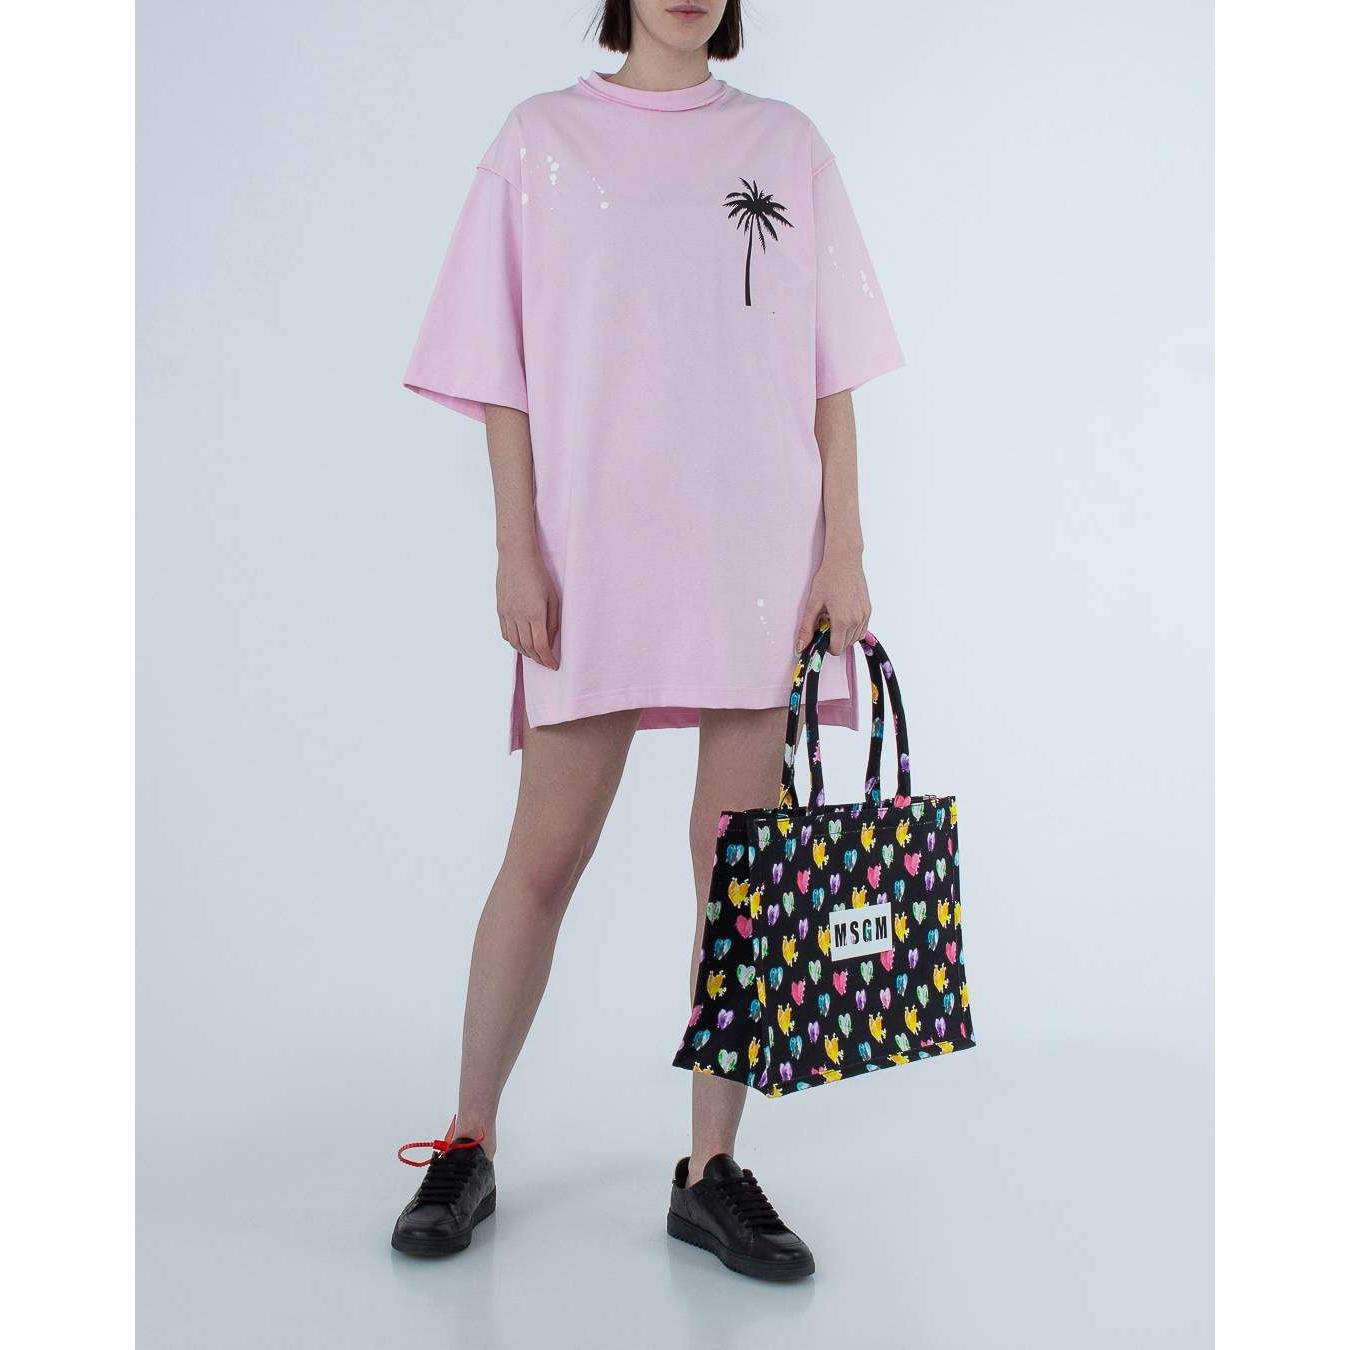 Comme Des Fuckdown | Chic Pink Cotton T-Shirt Dress with Unique Print| McRichard Designer Brands   